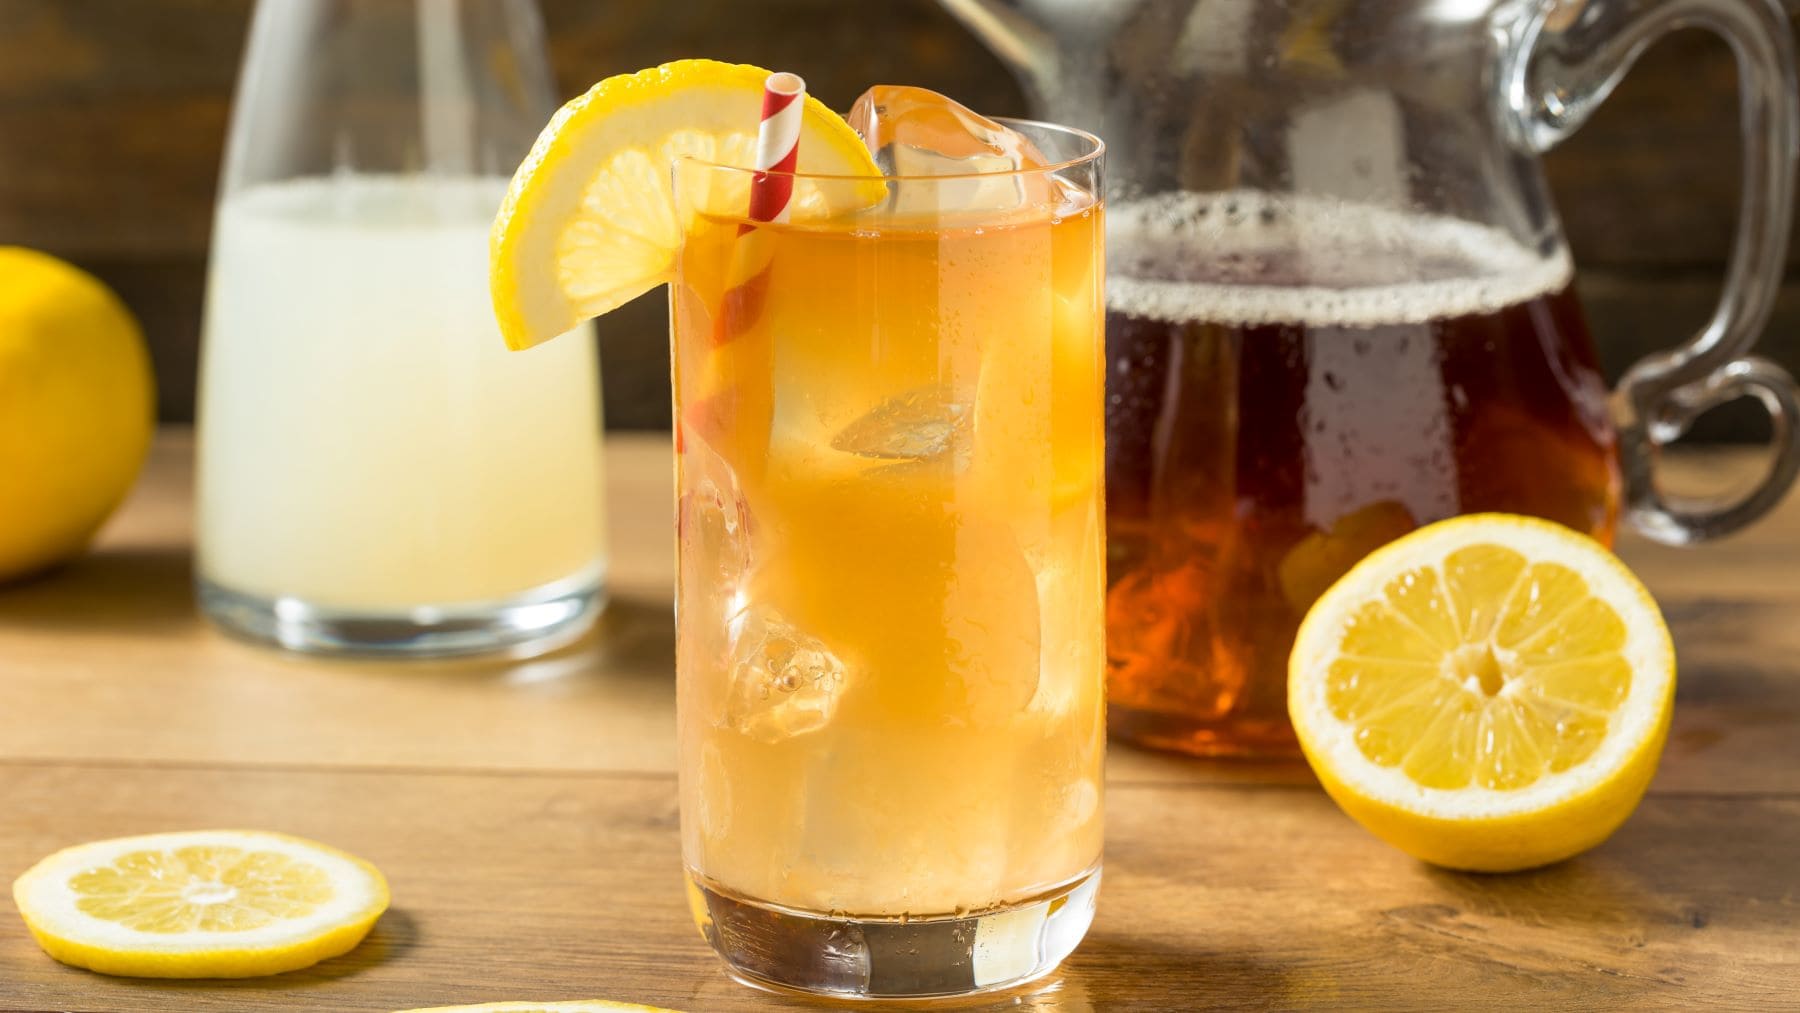 Vodka Spiked Arnold Palmer alias Jon Daly Cocktail mit Zitronenscheibe im Longdrink-Glas auf Holz. Im Bild Zitronen, Zitronenscheibe und je eine Karaffe mit Limonade und Eistee. Frontalansicht.